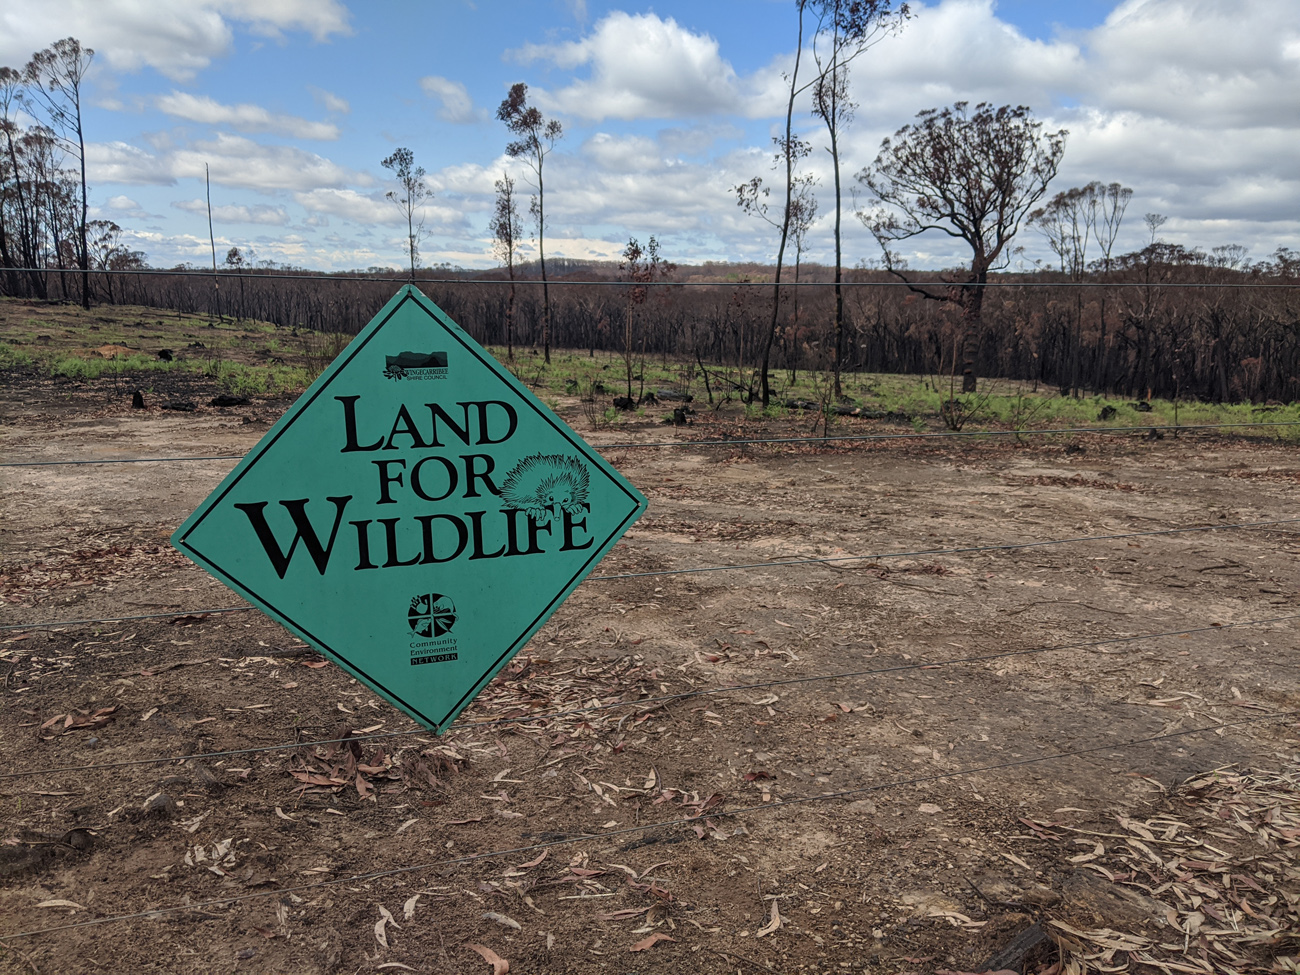 Land for Wildlife sign and burnt landscape